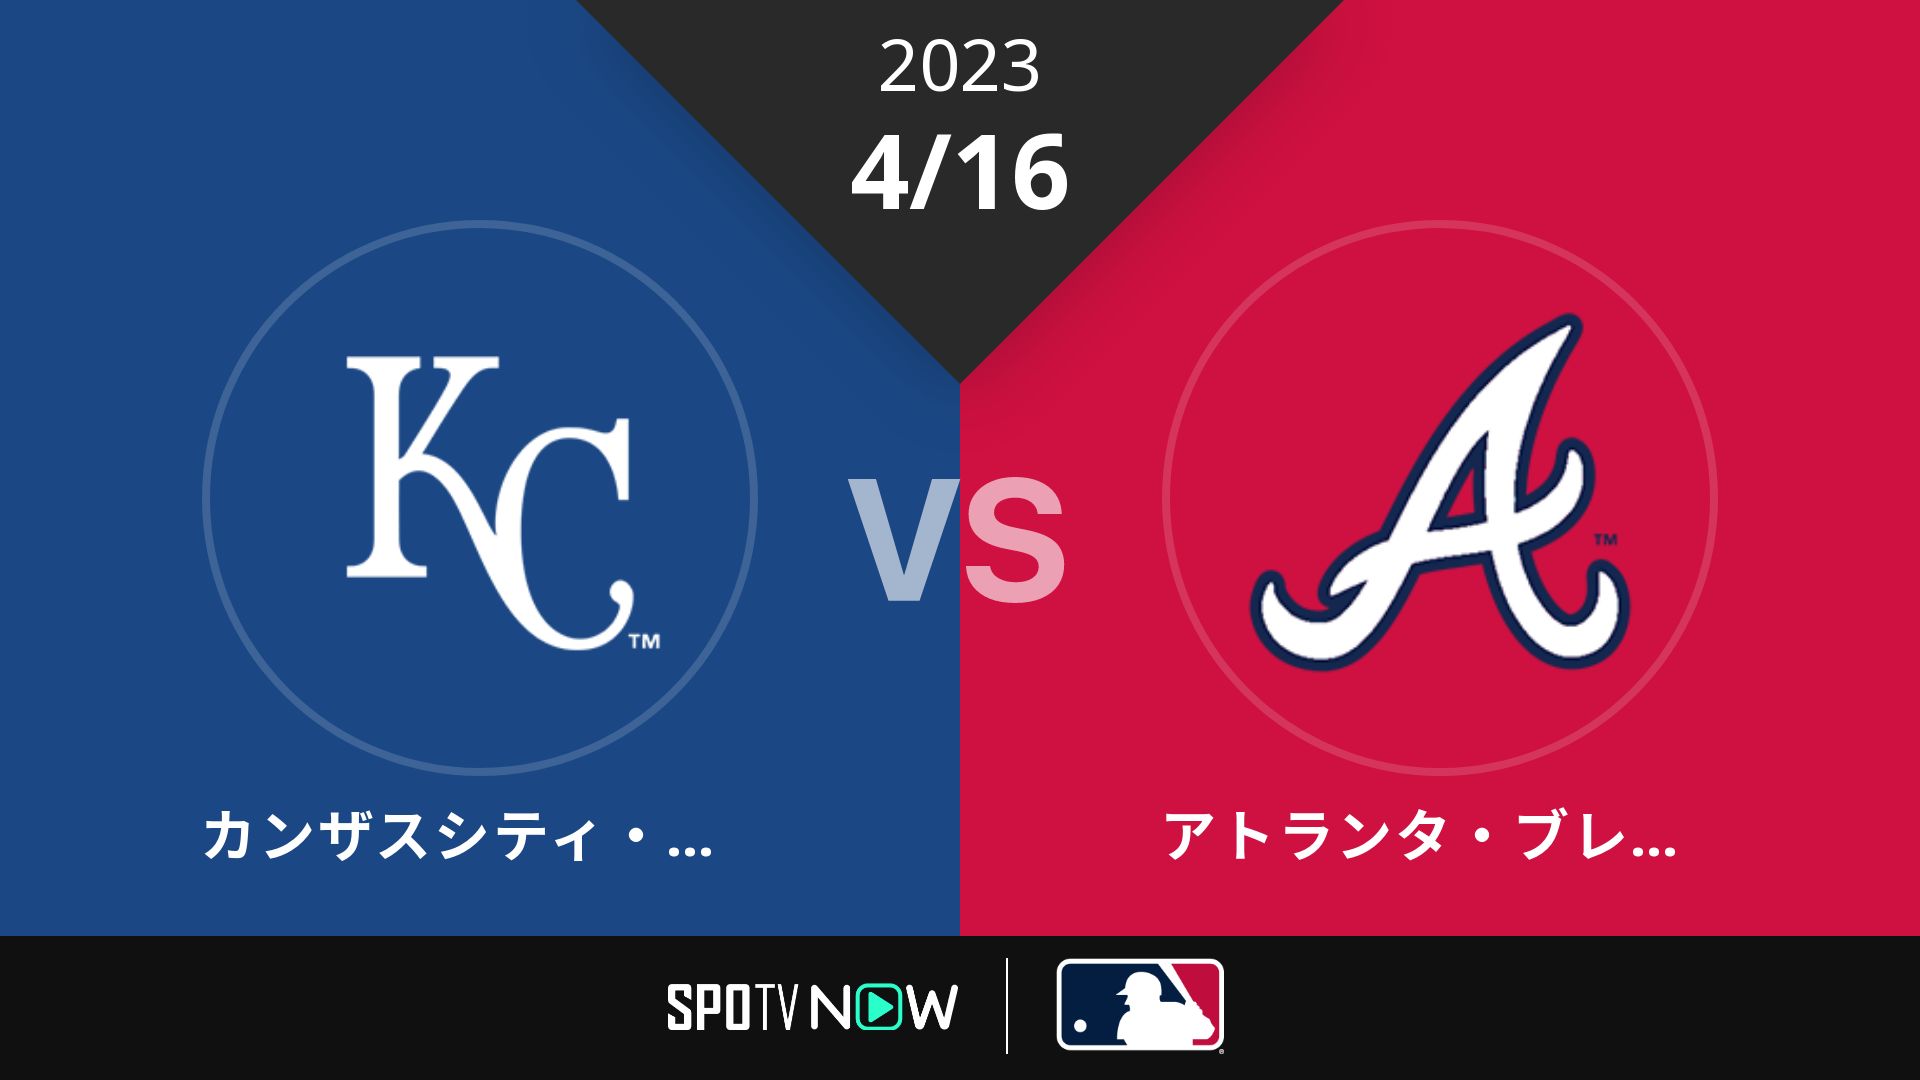 2023/4/16 ロイヤルズ vs ブレーブス [MLB]